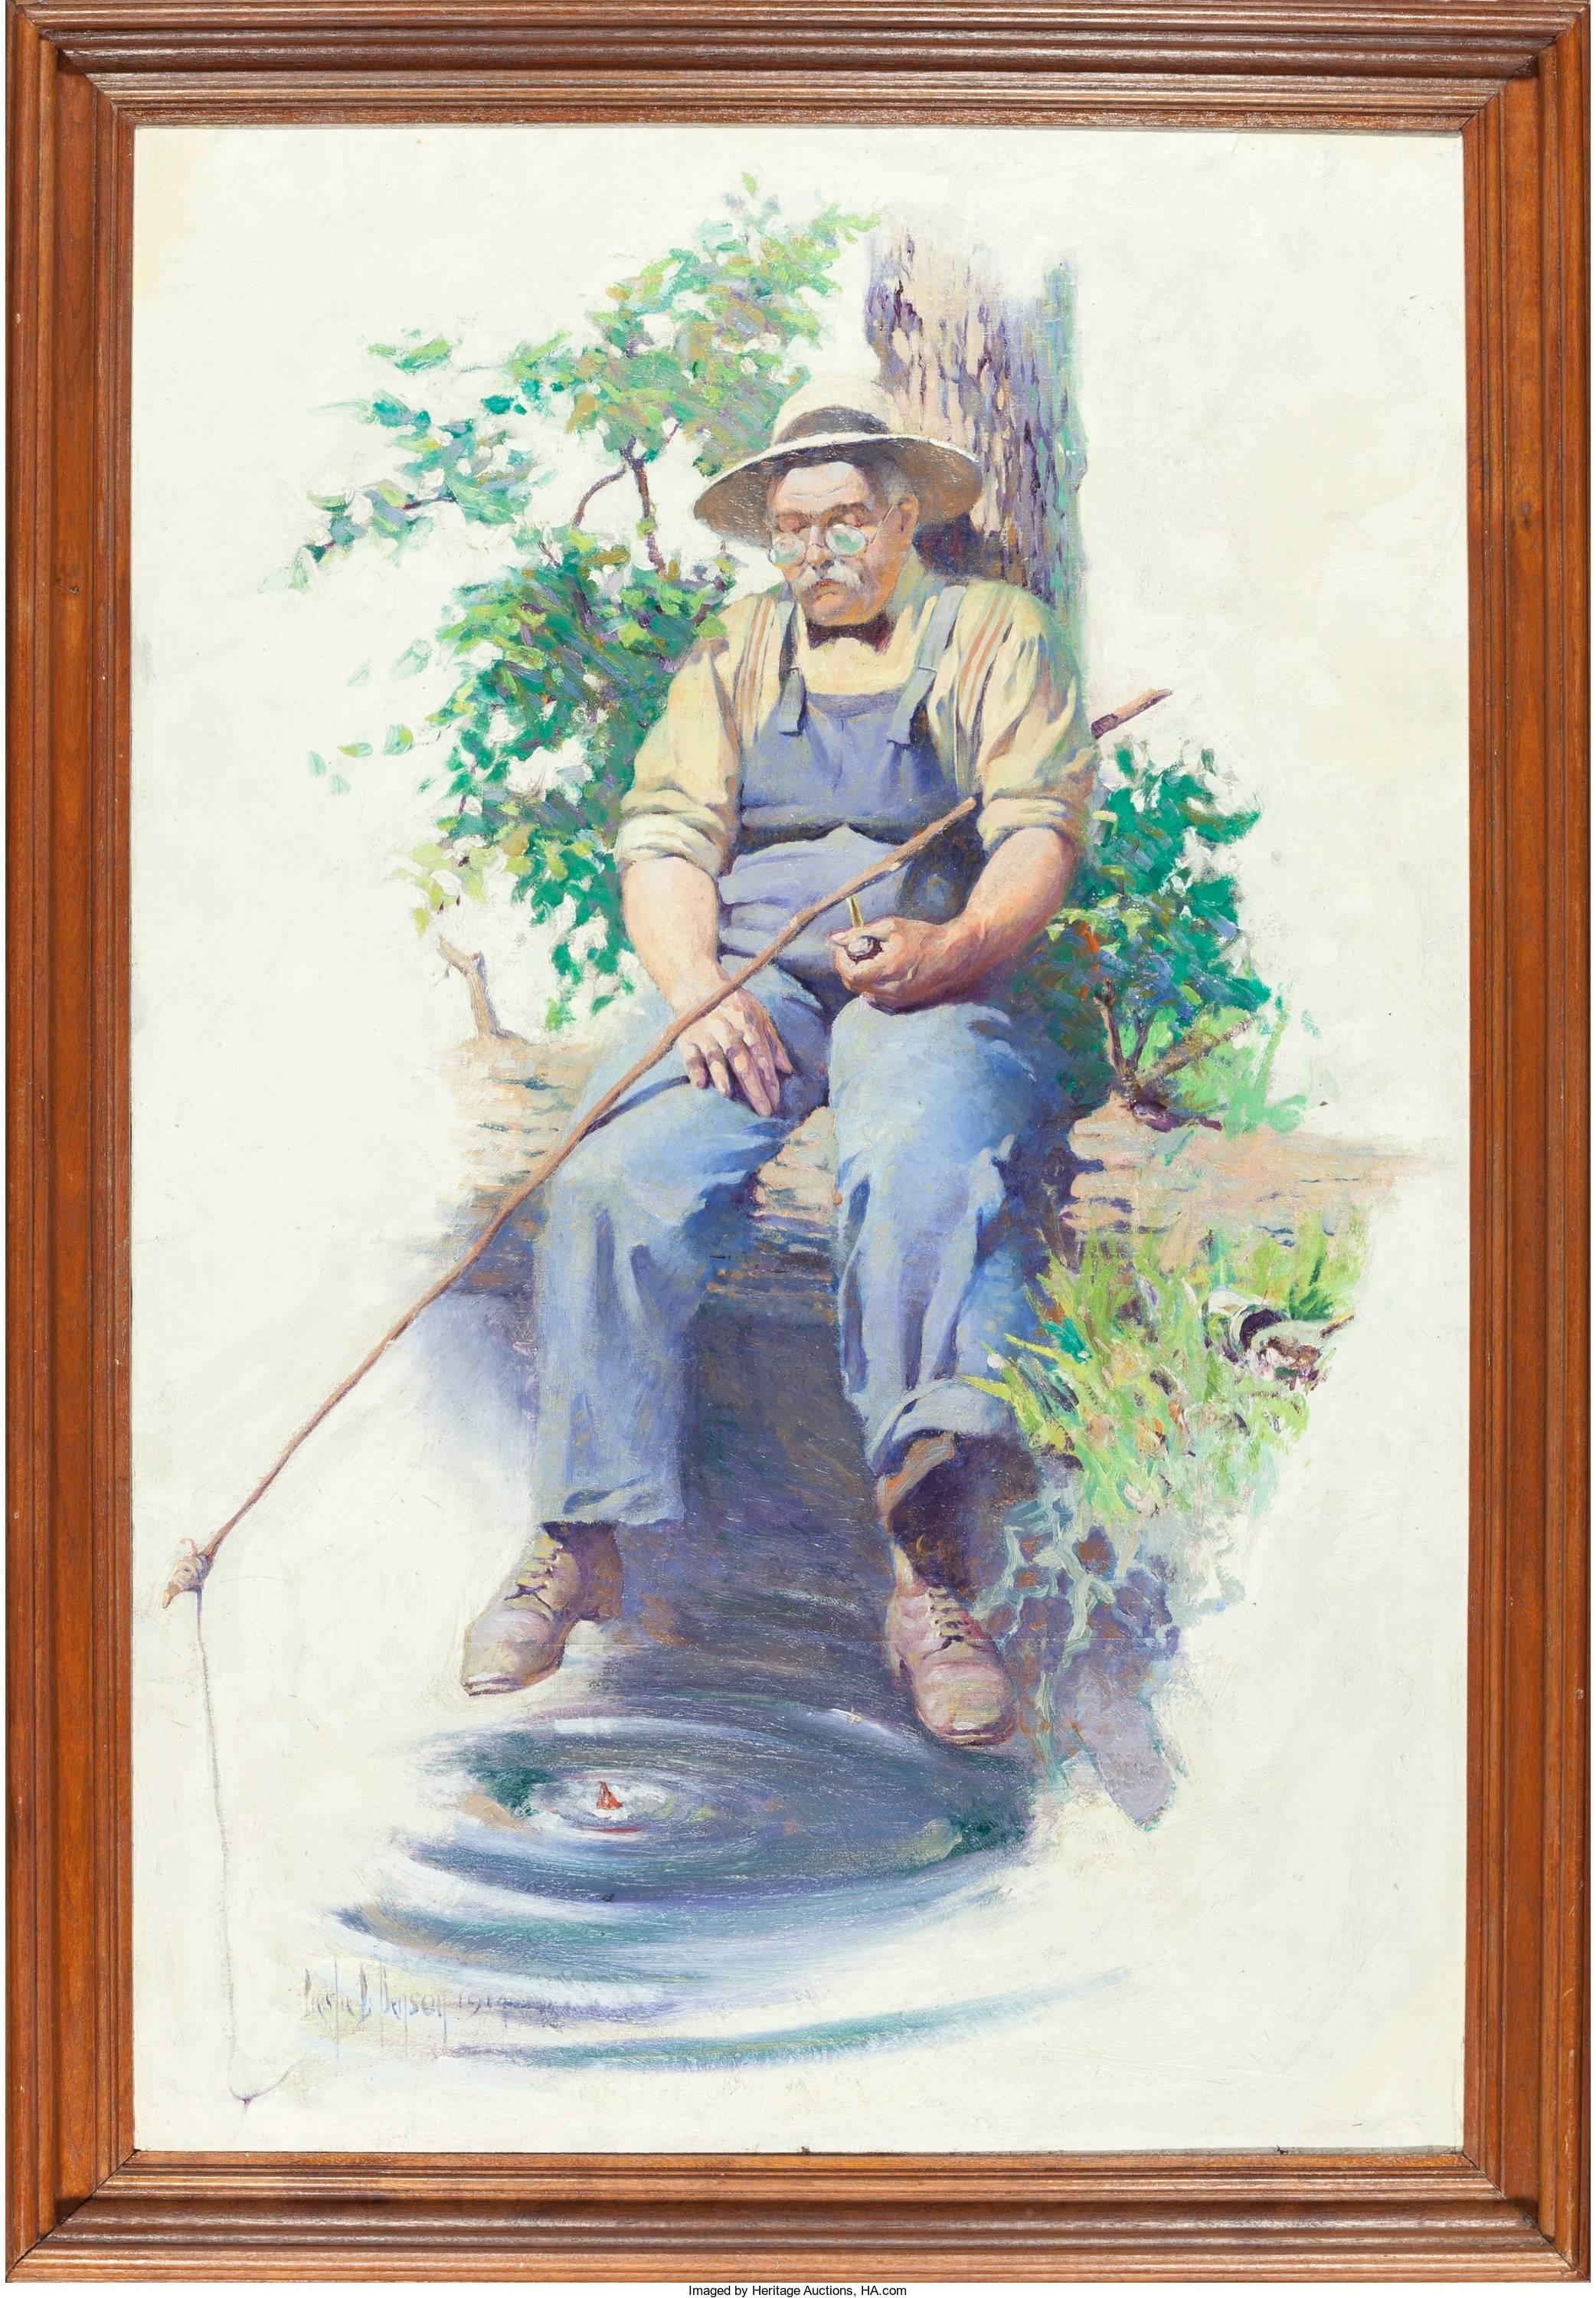 Man Fishing - Painting by Leslie Langille Benson